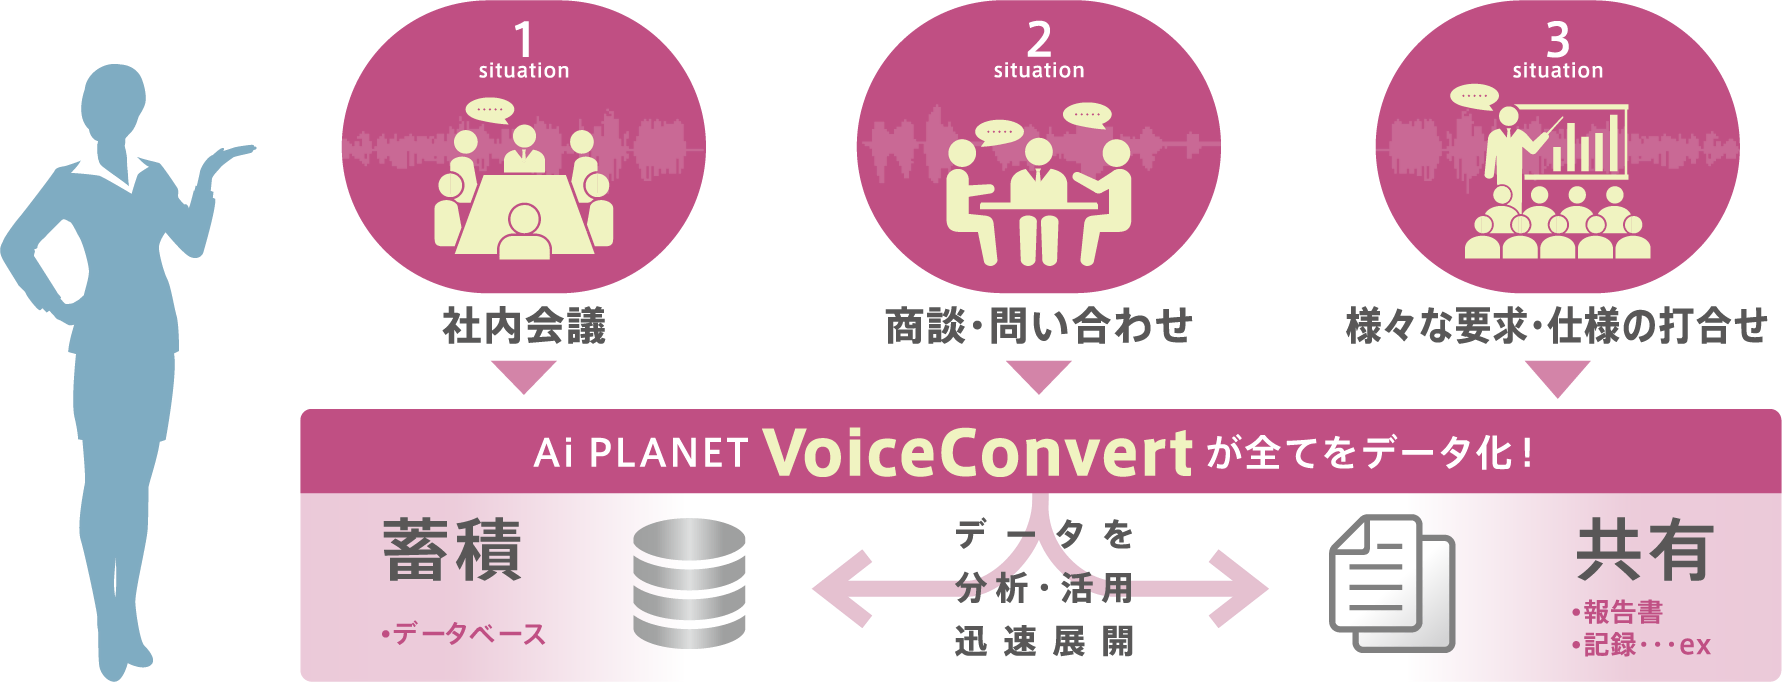 Ai PLANET VoiceConvert が全てデータ化します